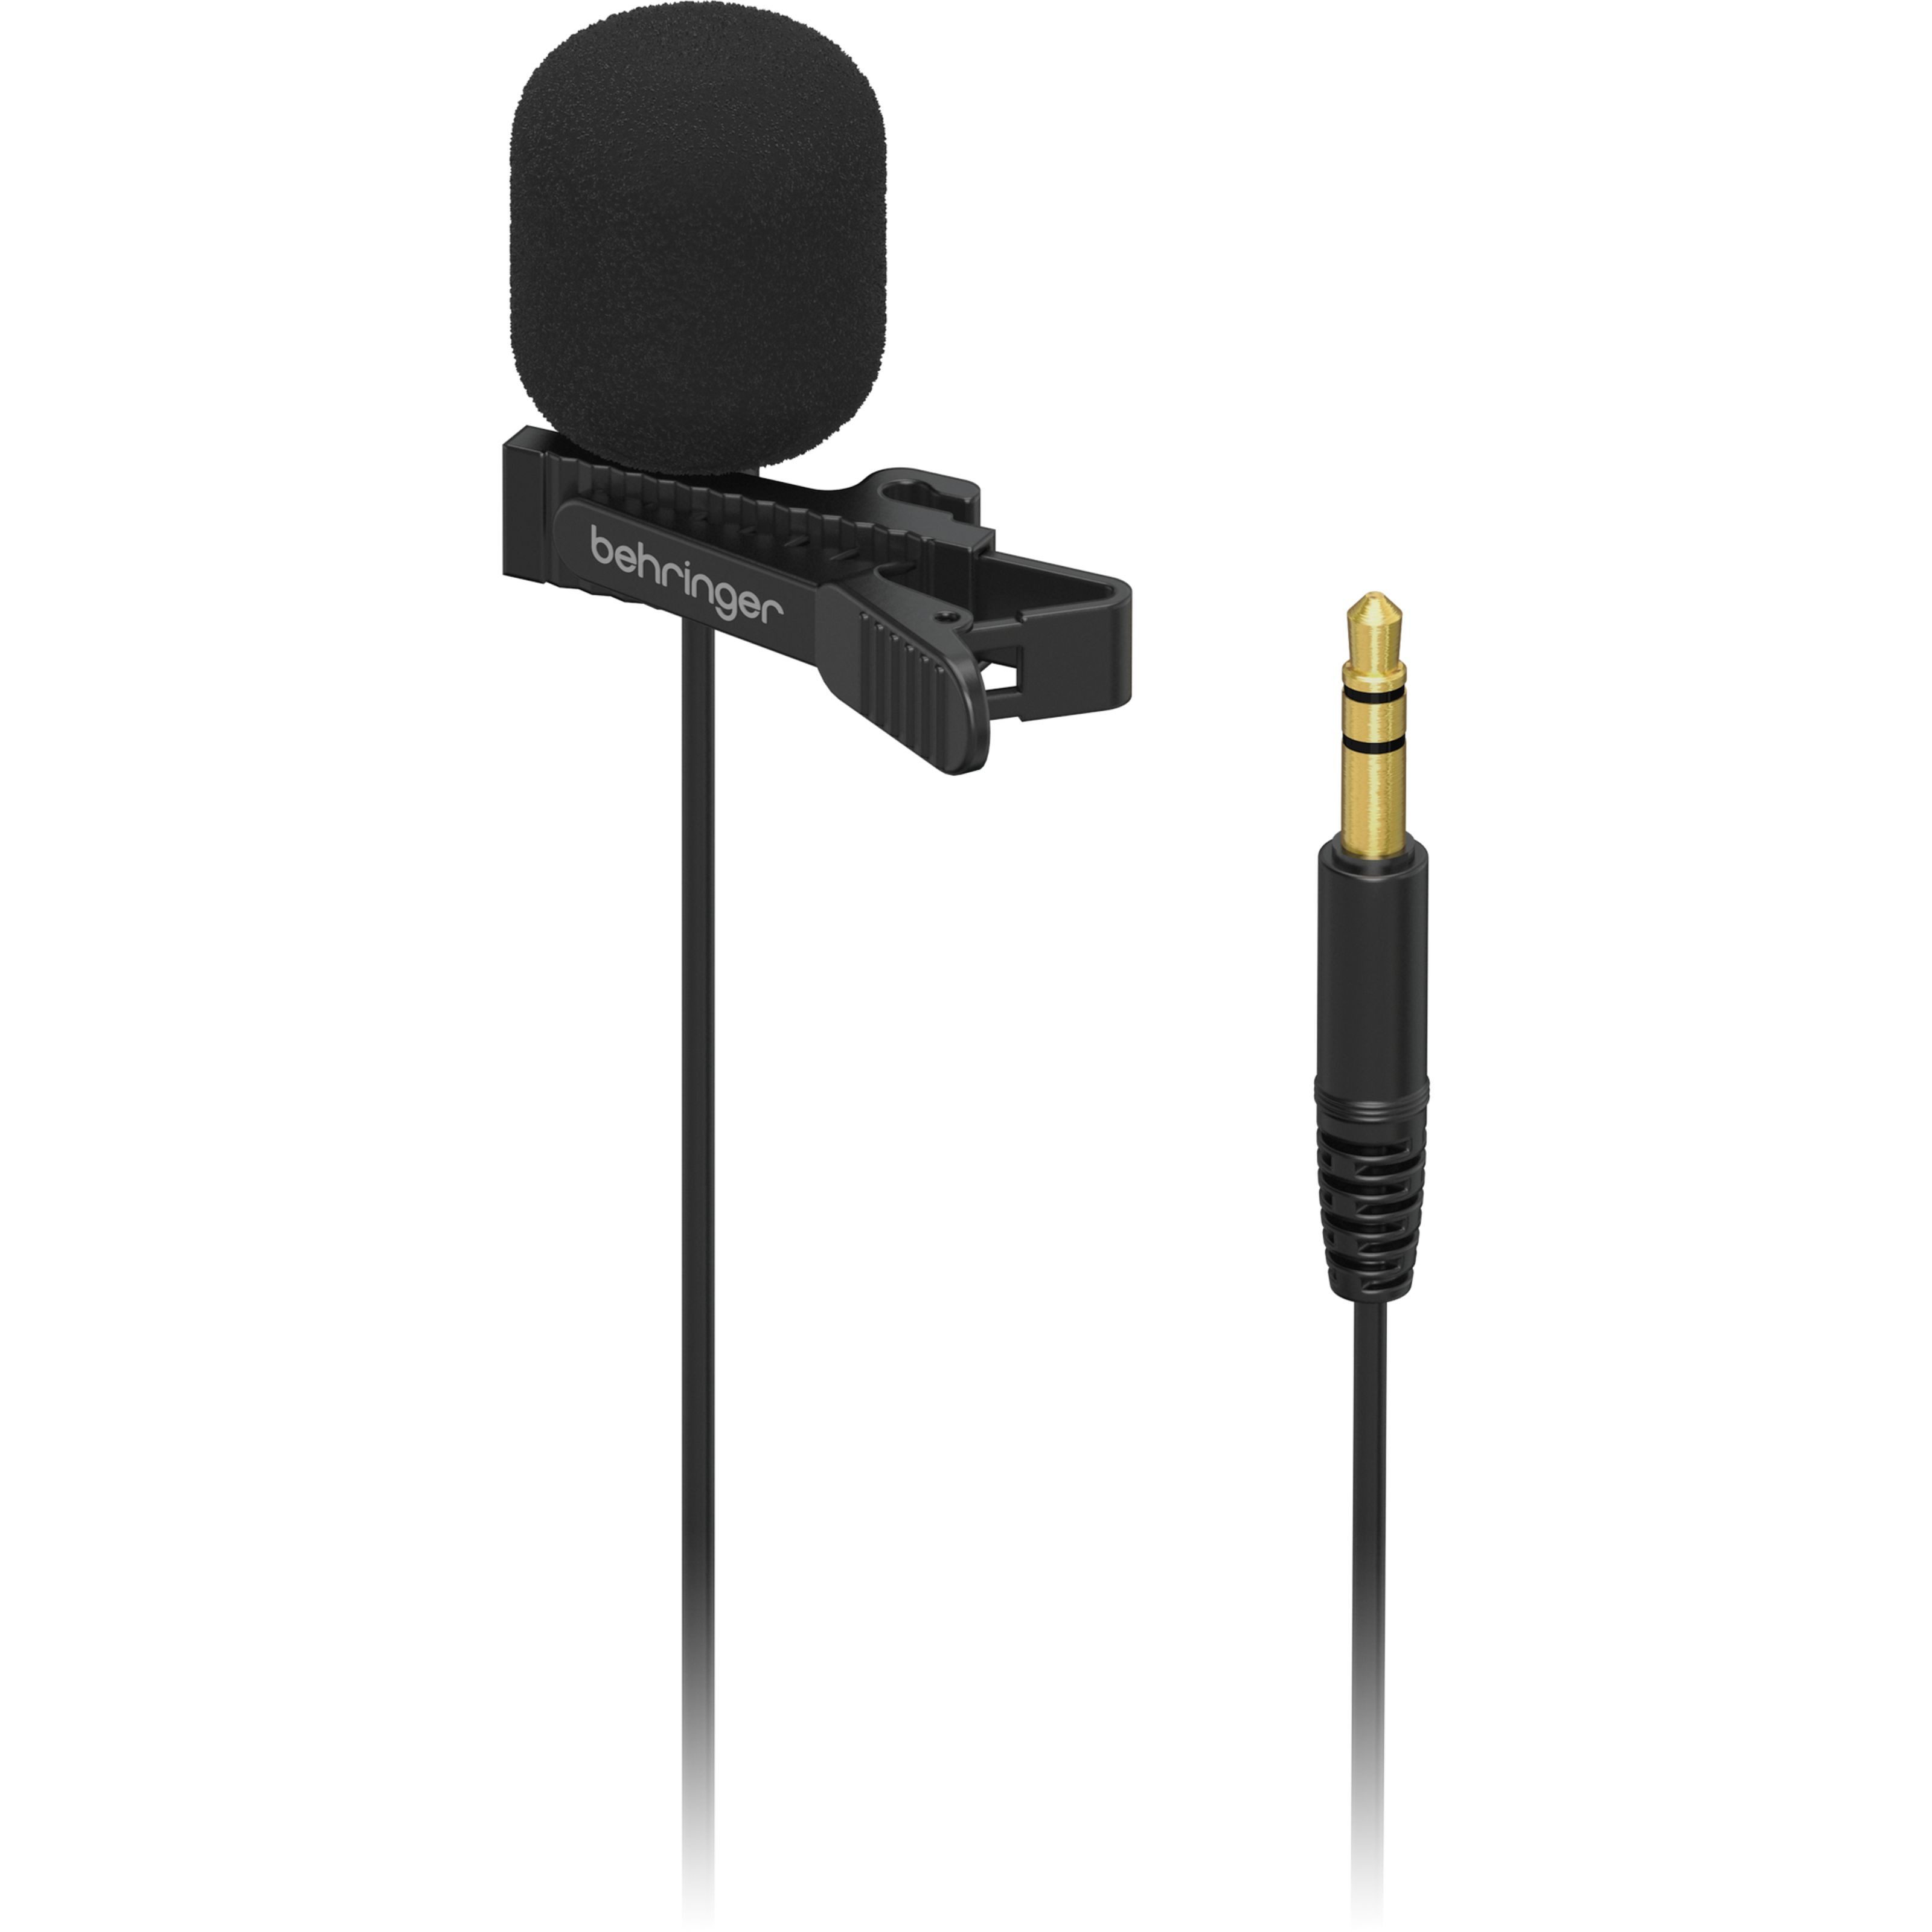 Behringer Mikrofon, BC LAV GO - Ansteckmikrofon